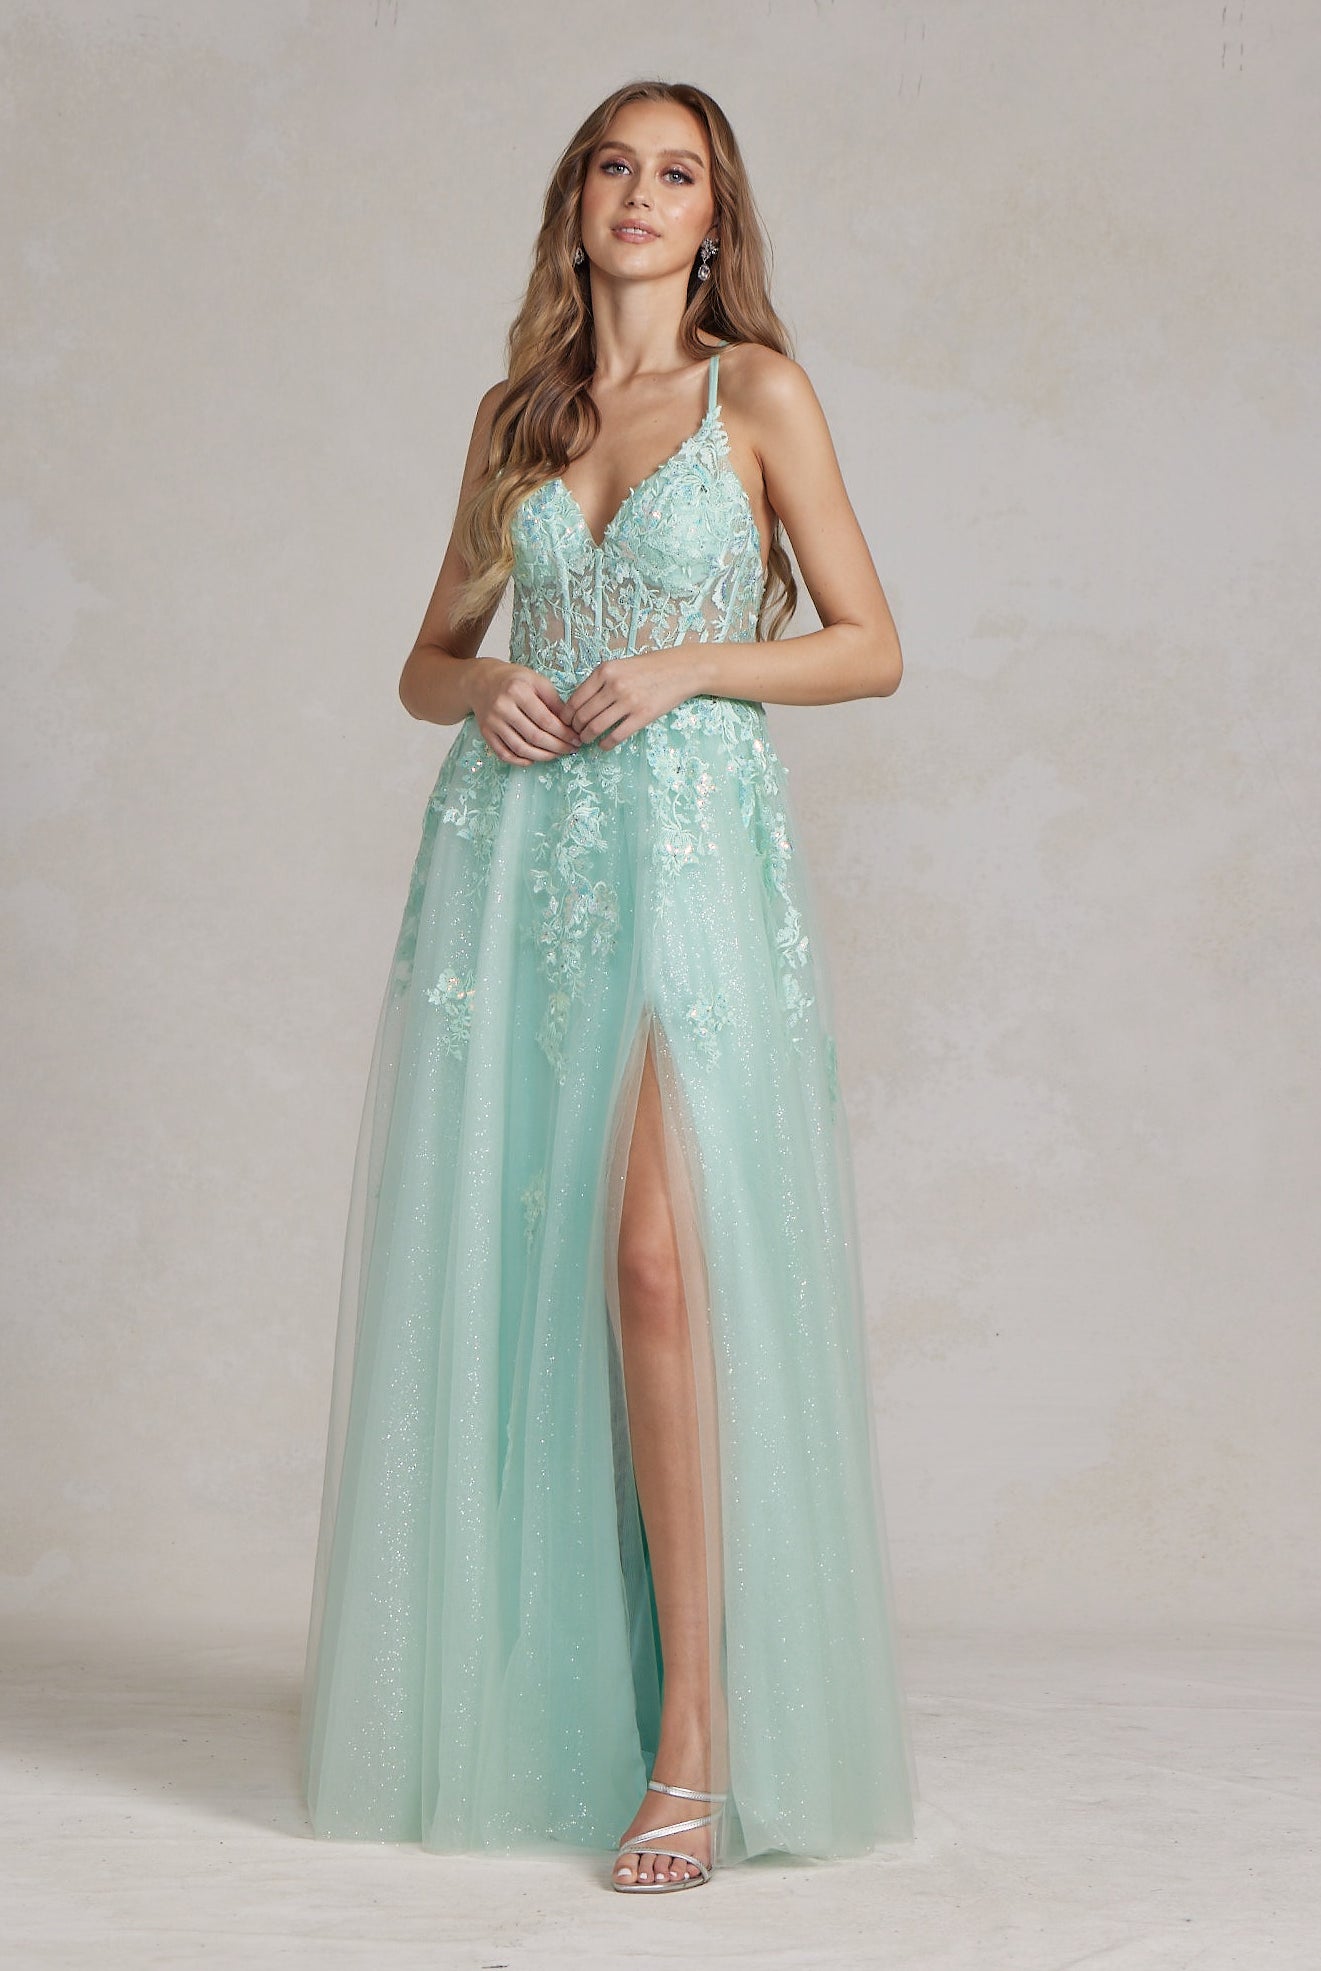 Embellished Applique V-Neck Side Slit Tulle Skirt Long Prom Dress NXT1081-All Dresses, Prom-smcfashion.com